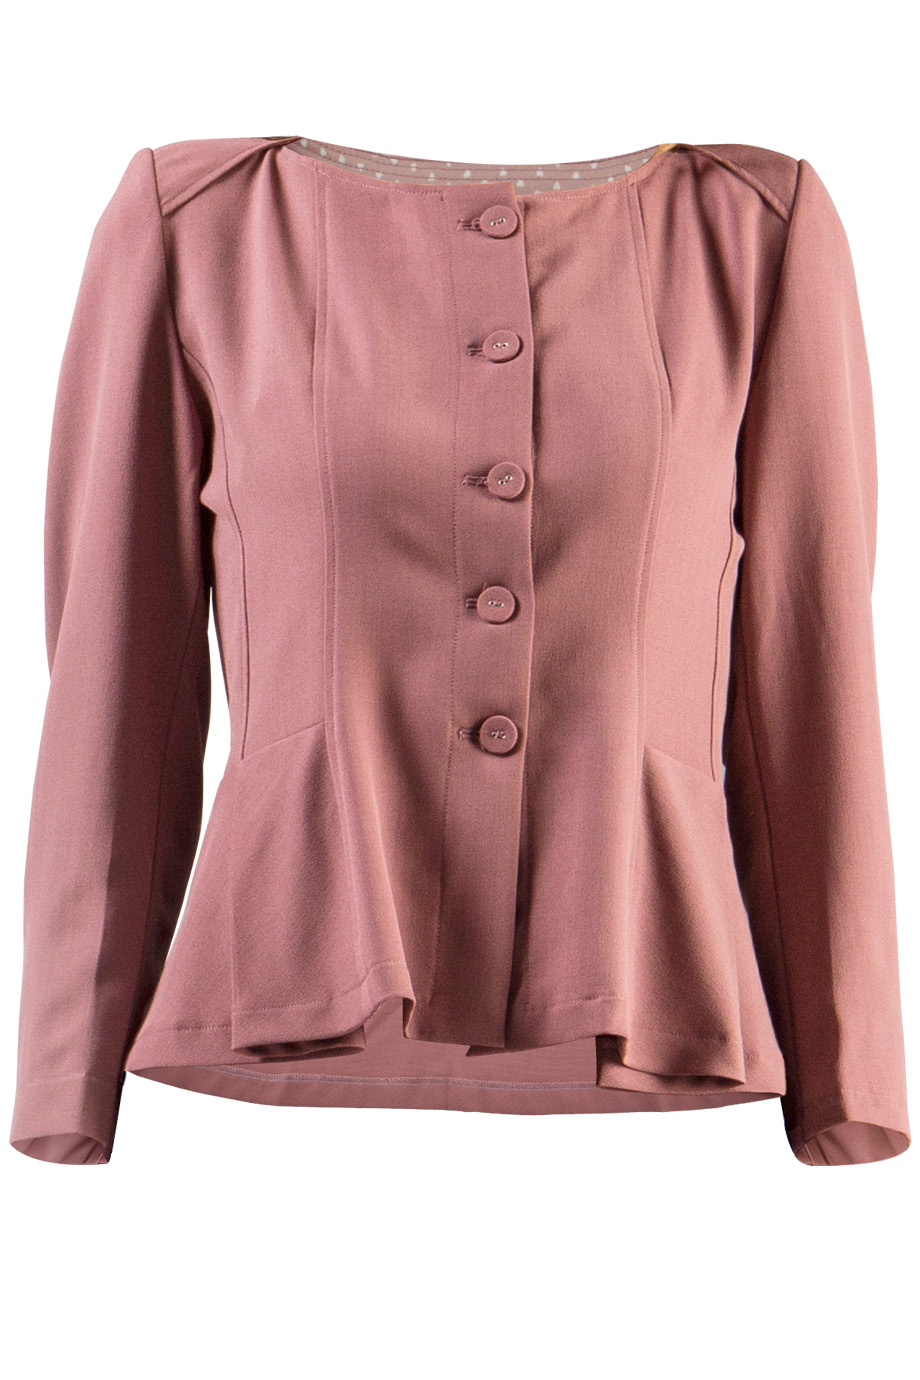 Áo khoác bộ ngắn- Francessa Peplum Suit Jacket/ Pale Aubergine 2157